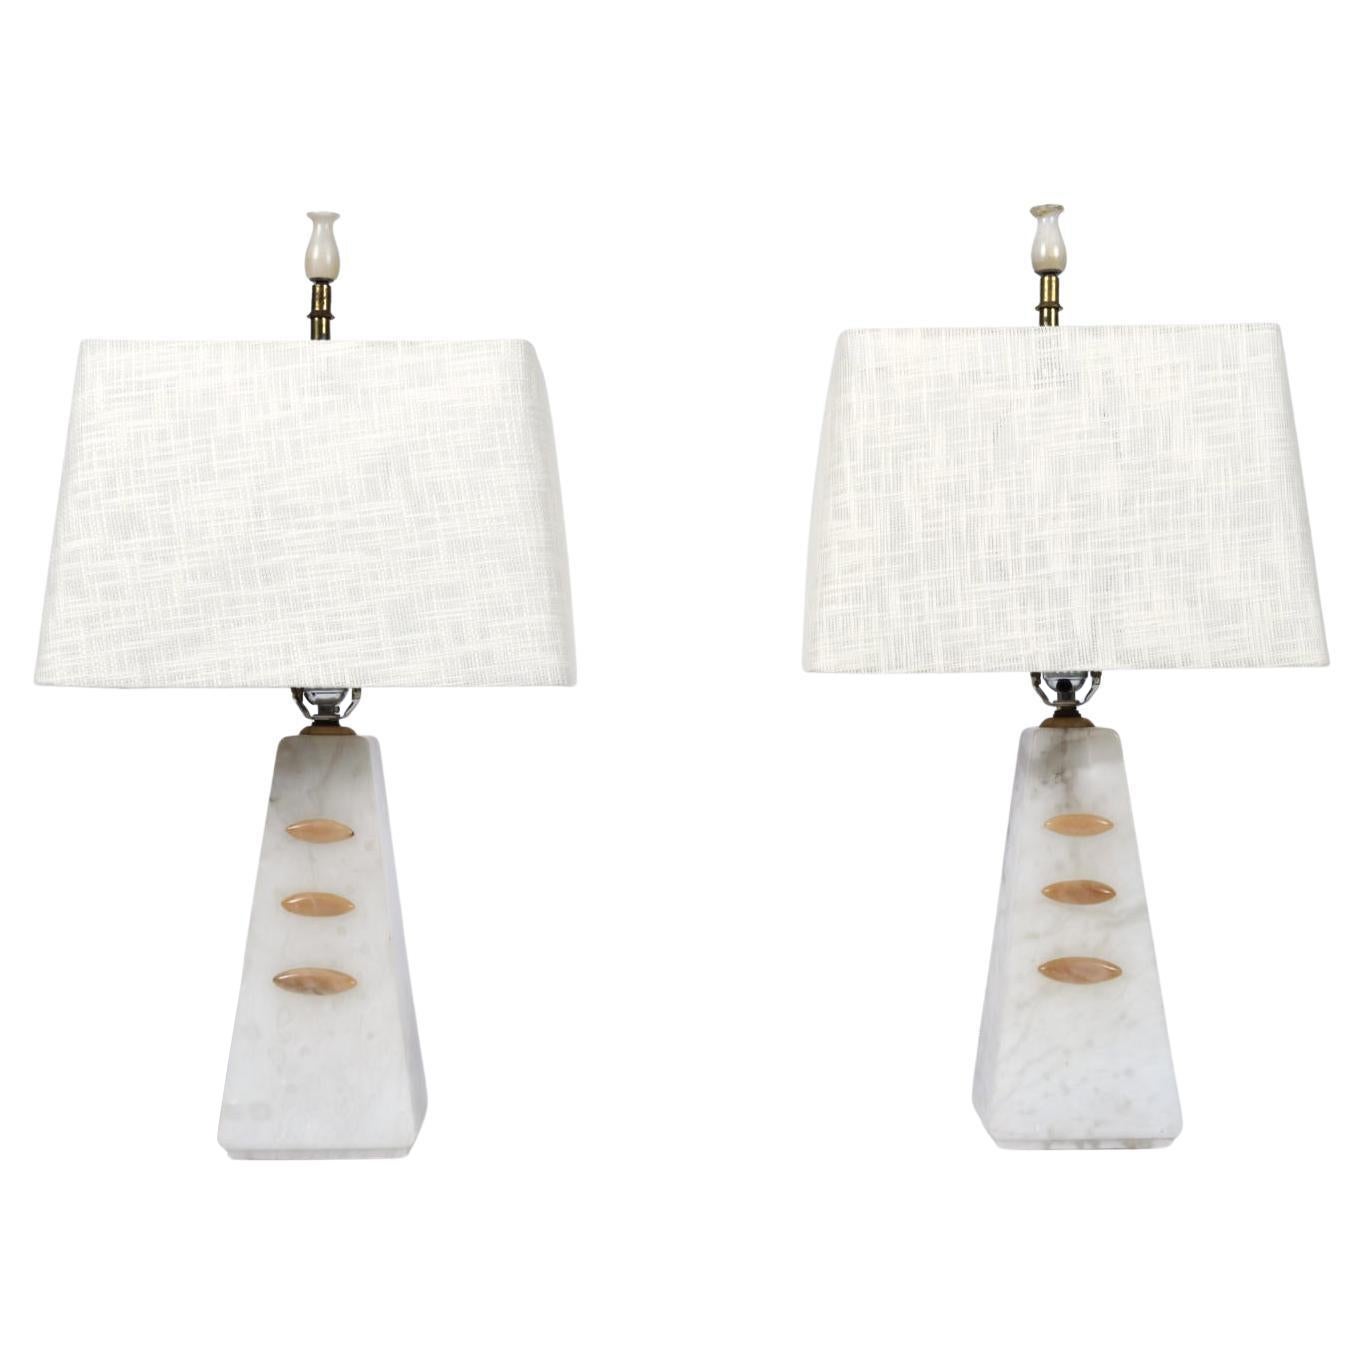 Lampes de table et fleurons pyramides en albâtre, style transitionnel Art déco à moderne